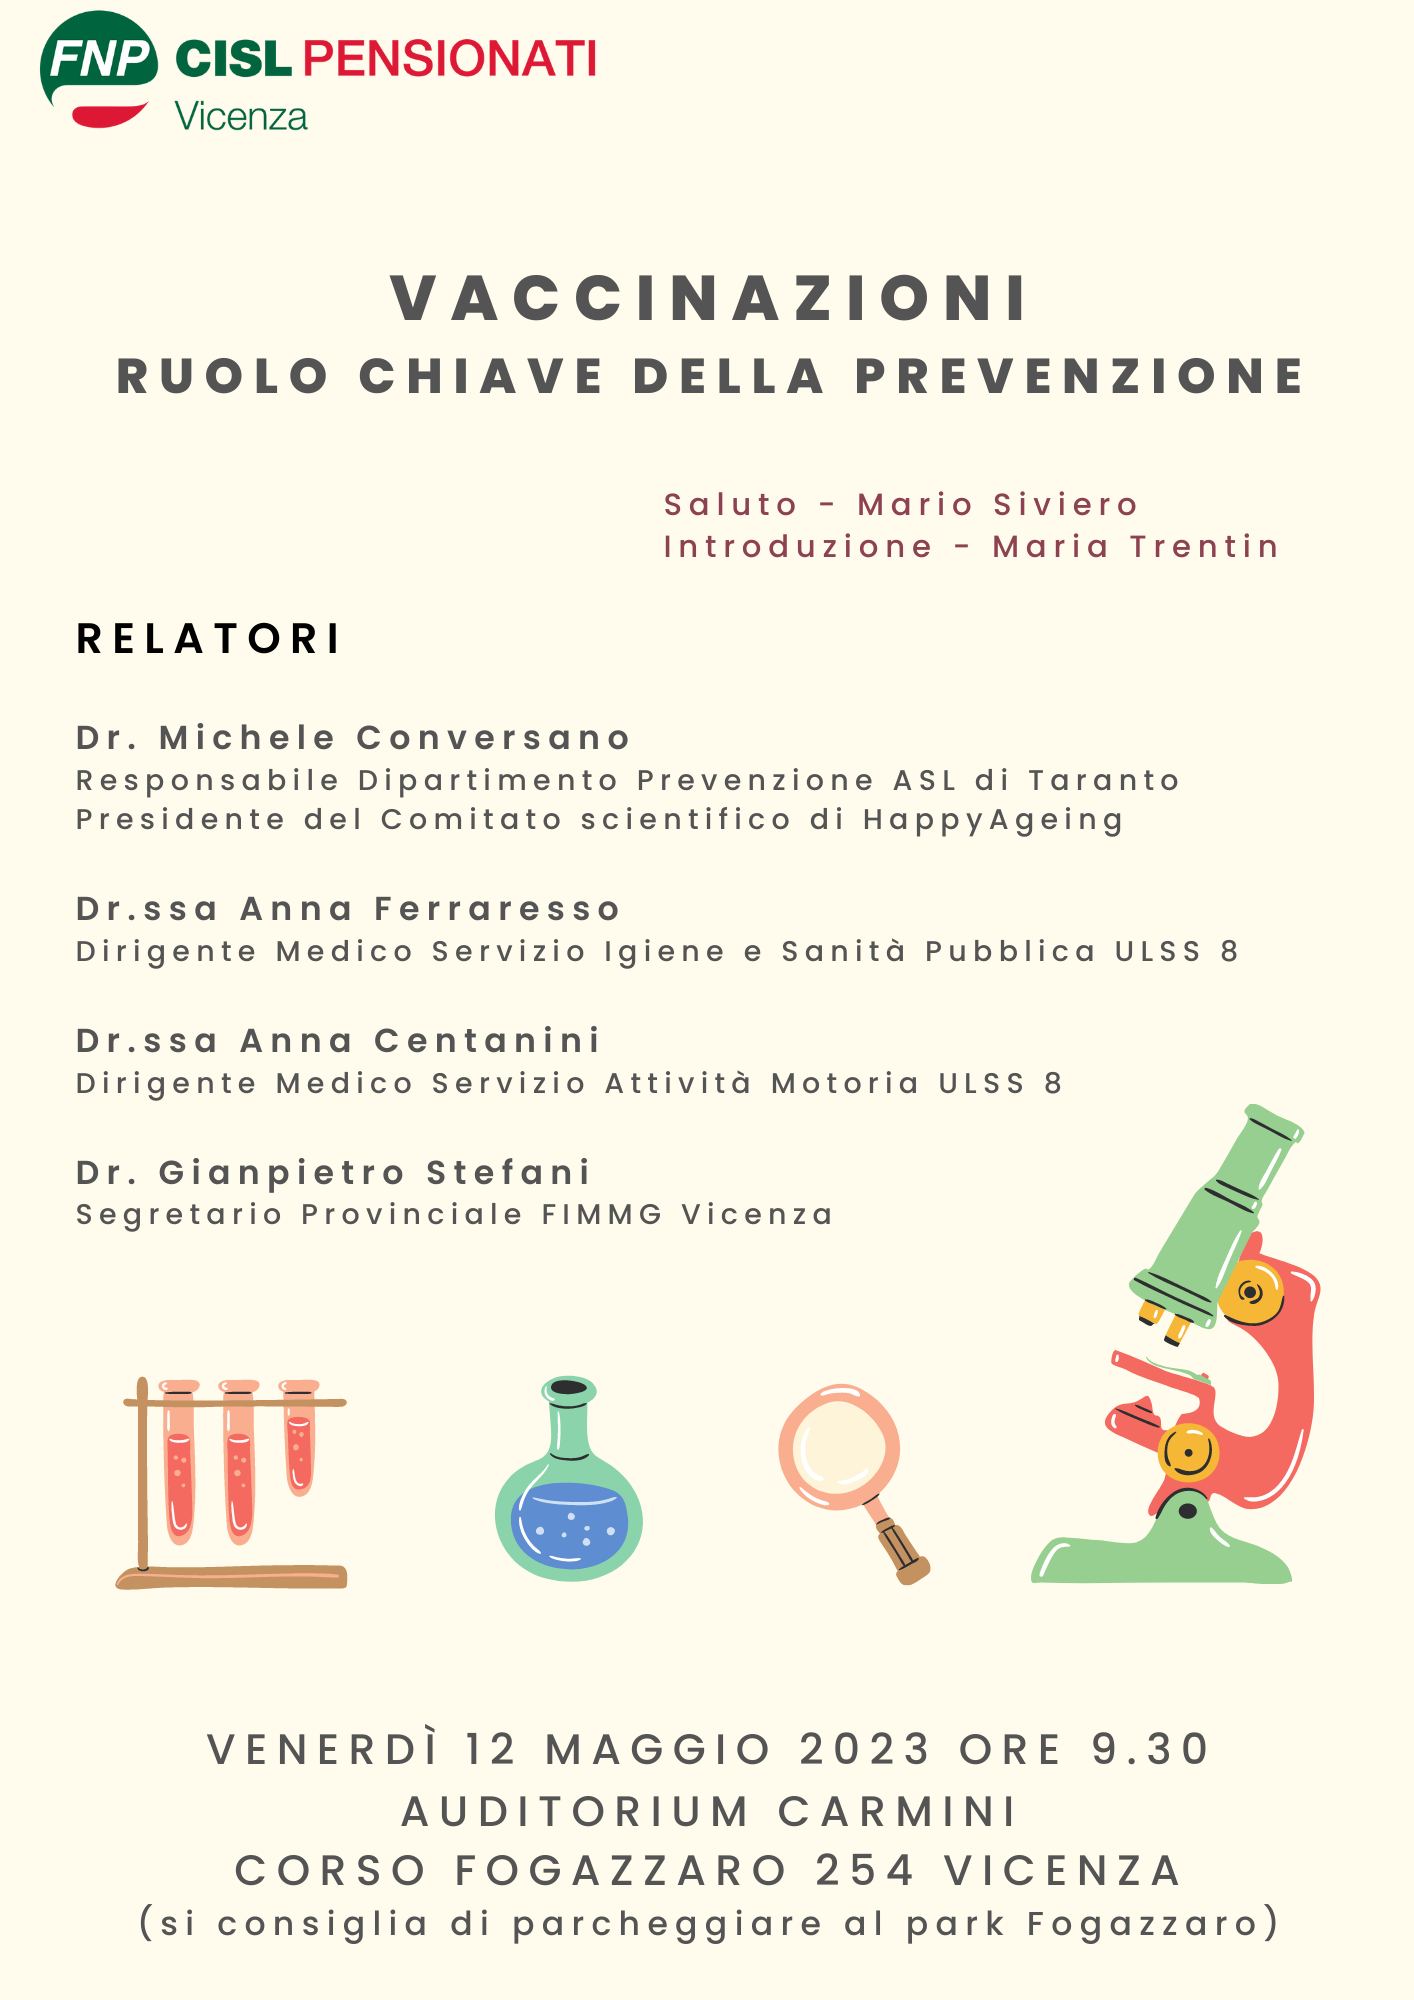 Vaccinazioni, ruolo chiave della prevenzione: 12.05.2023 a Vicenza